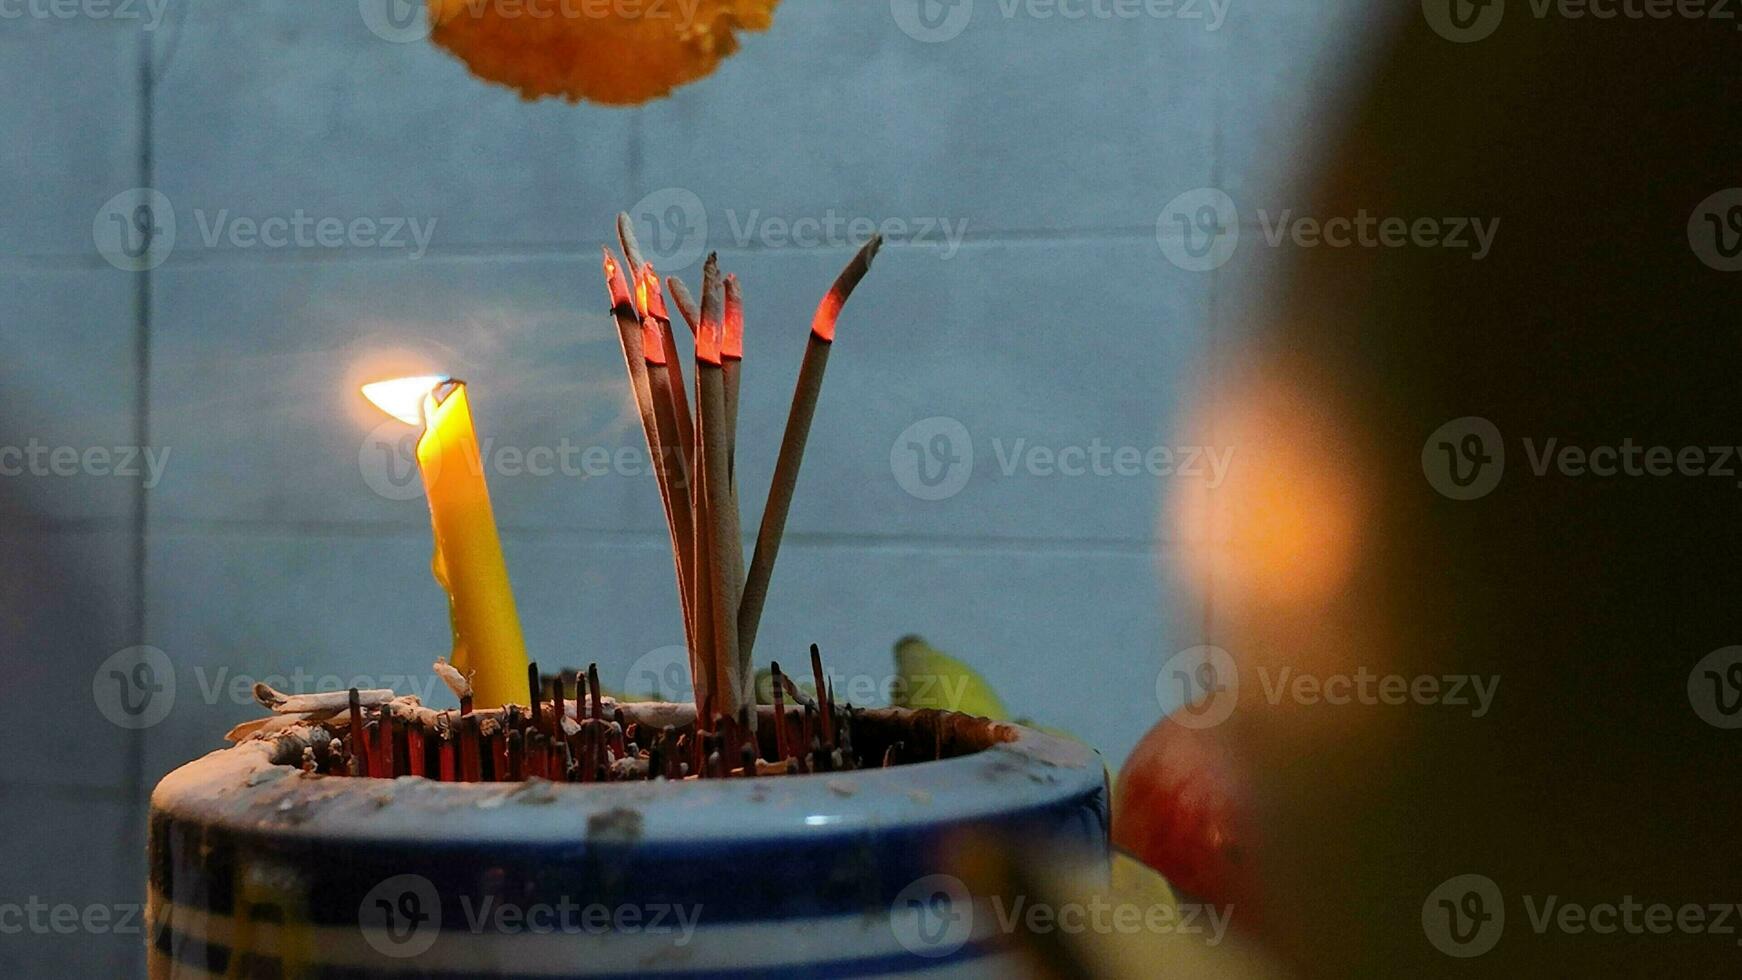 incienso velas fumar Fruta agua vaso Asia cultura tradicional celebracion chino nuevo año 2024 10 diez th febrero festival budismo el respeto China Tailandia Bangkok religión templo Dios creencia esperanza foto